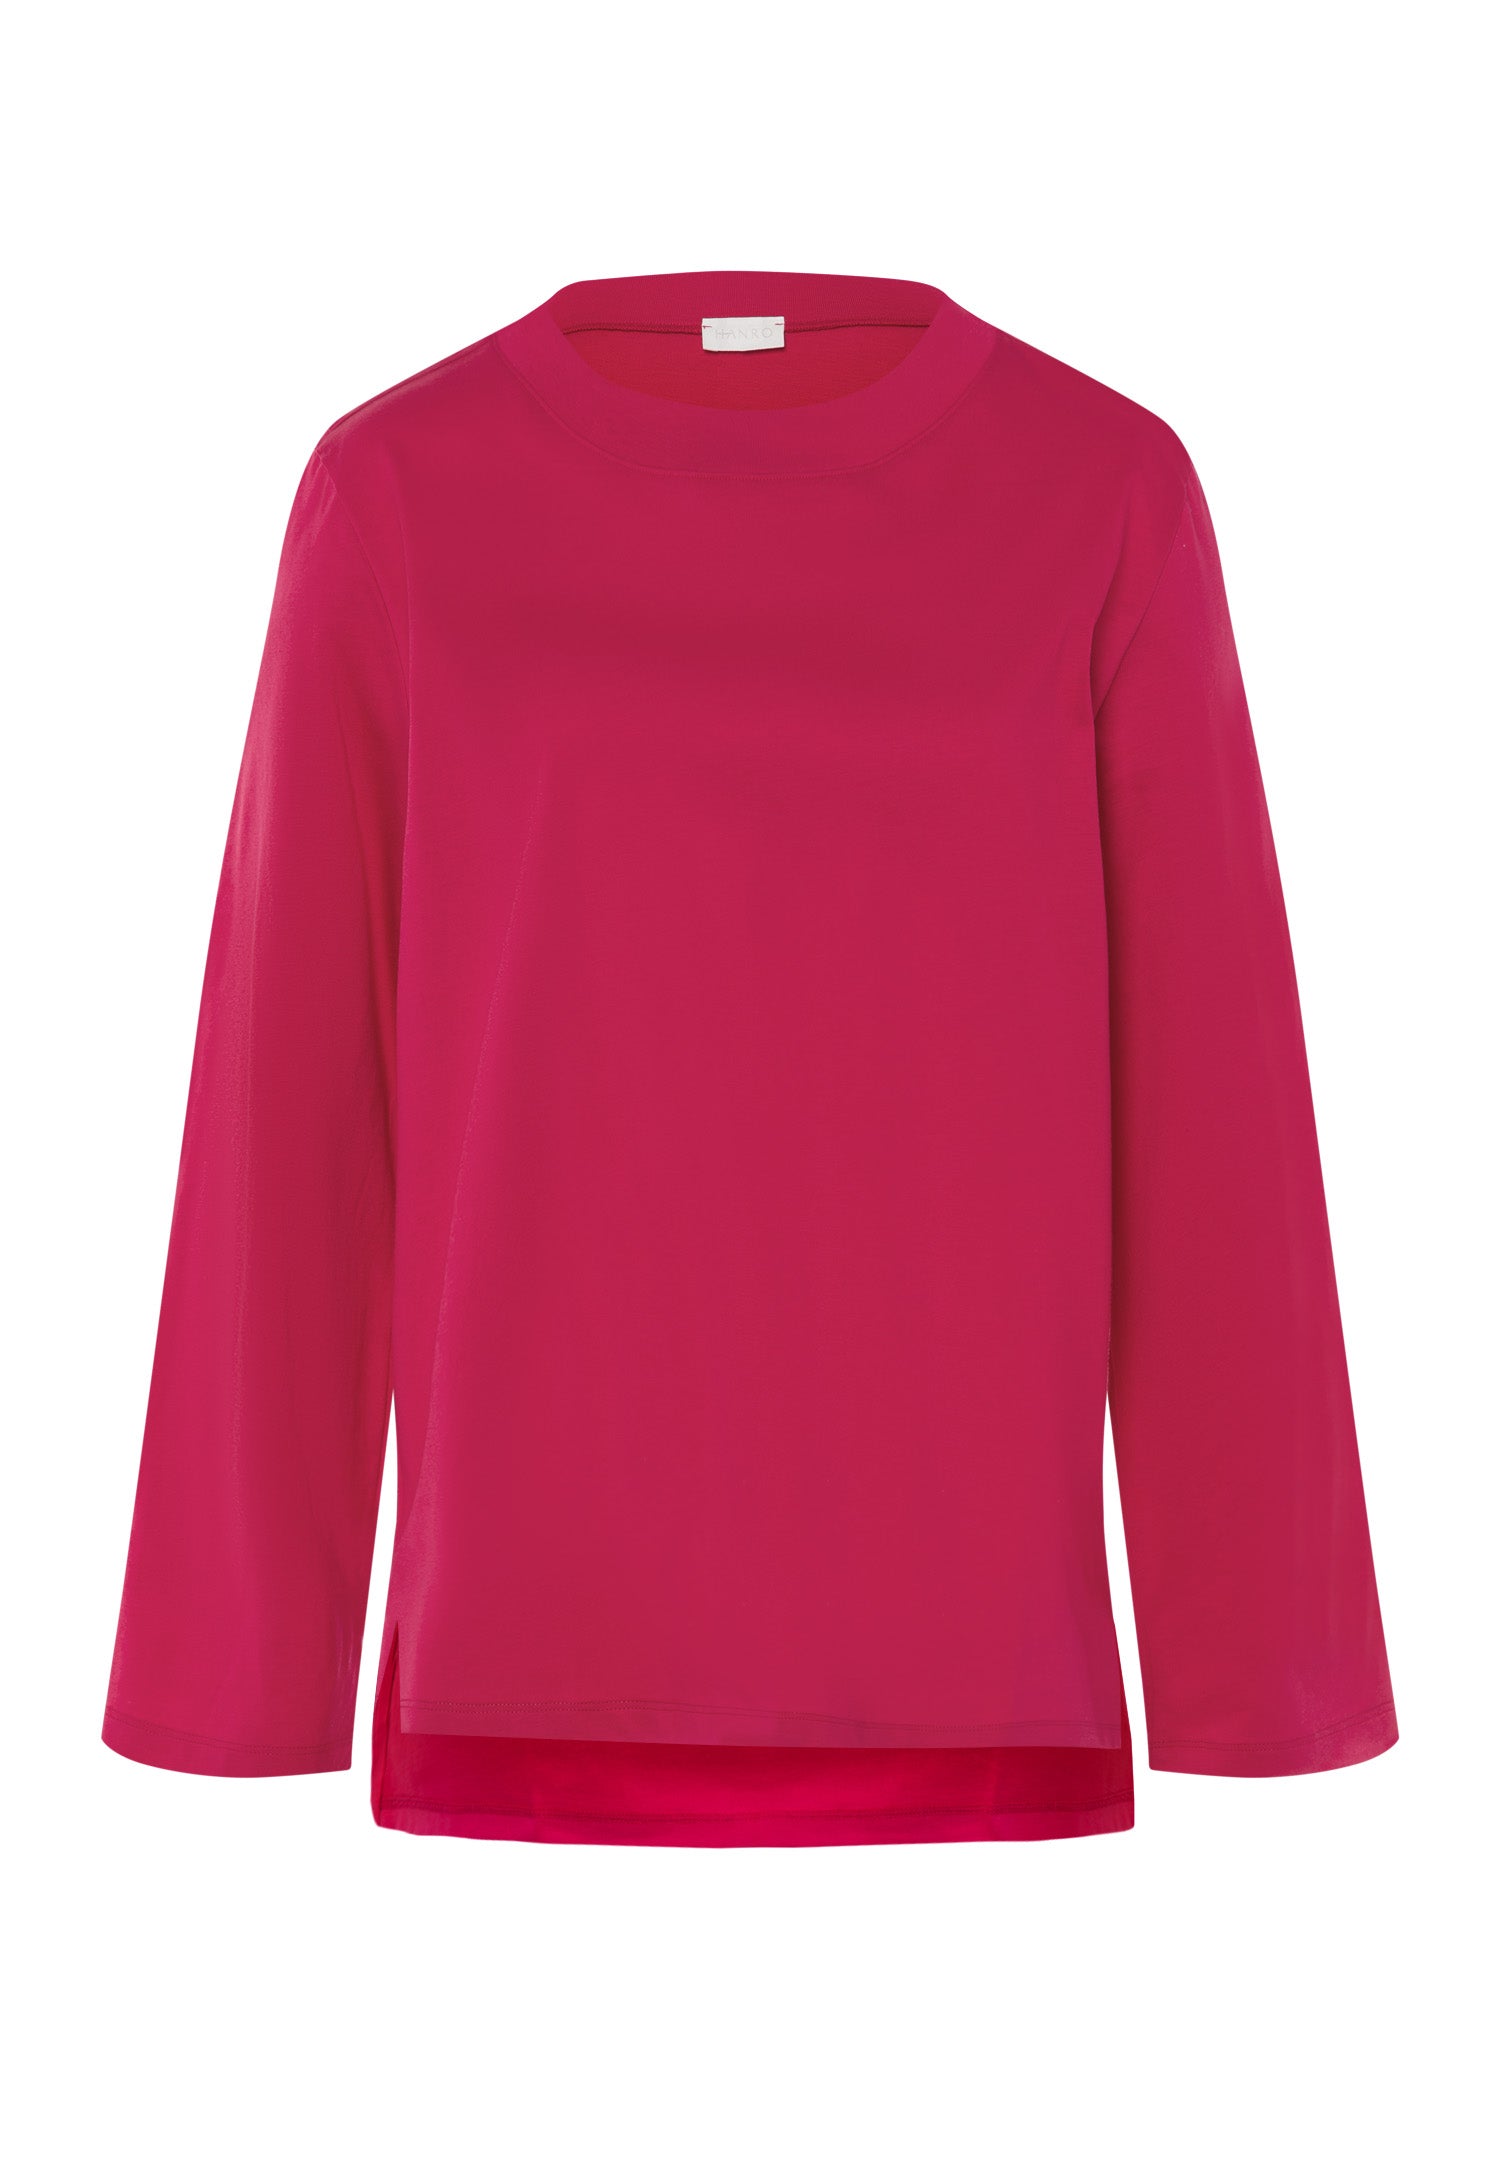 78661 Natural Shirt Long Sleeve Shirt - 2424 Pink Mimosa